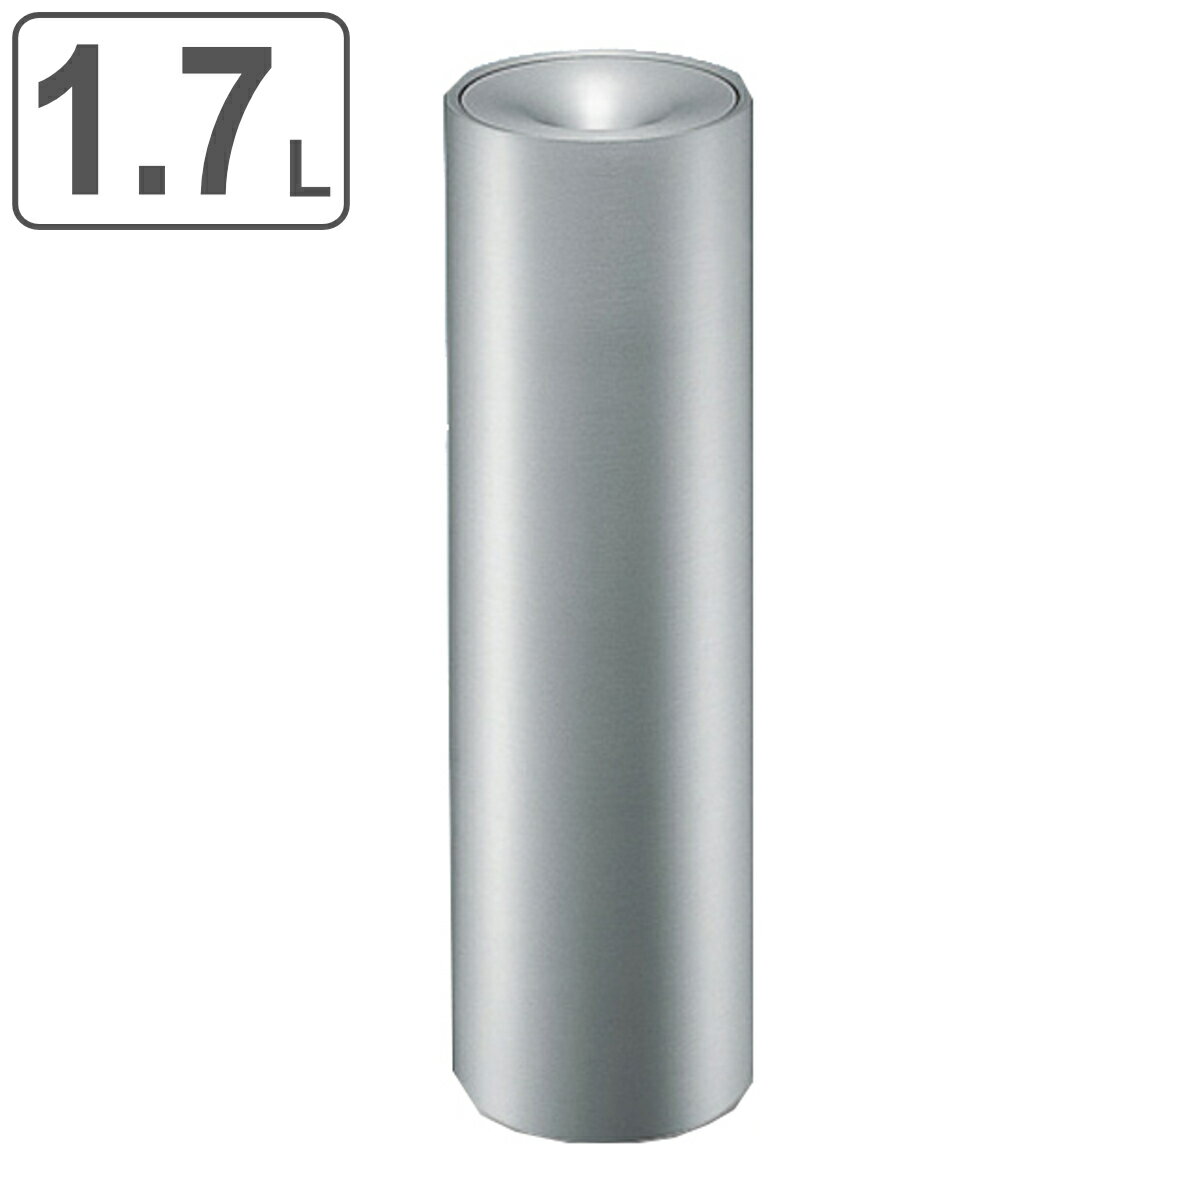 サイズ約 高さ60（cm）直径：約 19（cm）灰皿ボトル：約 直径16×高さ11（cm）重量約 4.2kg容量約 1.7L内容量1台材質ボディ・プレート：ステンレスヘアーライン仕上げ灰皿ボトル：アルミアルマイト仕上げ屋内・屋外屋内区分返品・キャンセル区分（不可）●シャープなデザインで空間になじみやすく、置く場所を選ばない灰皿スタンドです。●オフィス・病院・公共施設・ホテル・レジャー施設などの喫煙コーナーに最適です。おすすめポイント高級感のあるステンレスヘアーライン仕上げ 1.7Lシャープなデザインで空間になじみやすく、置く場所を選ばない灰皿スタンドです。オフィス・病院・公共施設・ホテル・レジャー施設などの喫煙コーナーに最適です。サイズ関連キーワード：たばこ 吸い殻入れ すいがら入れ 喫煙室 店 飲食店 カフェ 筒型 シンプル スリム コンパクト 喫煙ルール シルバー 公共施設 レジャー施設 複合施設 病院関連商品はこちら灰皿スタンド 屋内用 9L 業務用 スモーキン30,780円灰皿スタンド 屋内用 2L 業務用 スモーキン23,780円灰皿スタンド 屋内用 3L 業務用 スモーキン10,280円灰皿スタンド 屋内用 2L 業務用 スモーキン29,480円灰皿スタンド 屋内用 3L 業務用 スモーキン71,280円灰皿スタンド 屋内用 5L 業務用 スモーキン66,800円灰皿スタンド 屋内用 6.1L 業務用 スモー83,800円灰皿スタンド 屋内用 4.3L 業務用 スモー73,800円灰皿スタンド 屋内用 2.4L 業務用 スモー43,800円灰皿スタンド 屋内用 2.4L 業務用 スモー54,800円灰皿スタンド 屋外用 11L 業務用 スモーキ32,800円灰皿スタンド 屋外用 3L 業務用 スモーキン17,800円